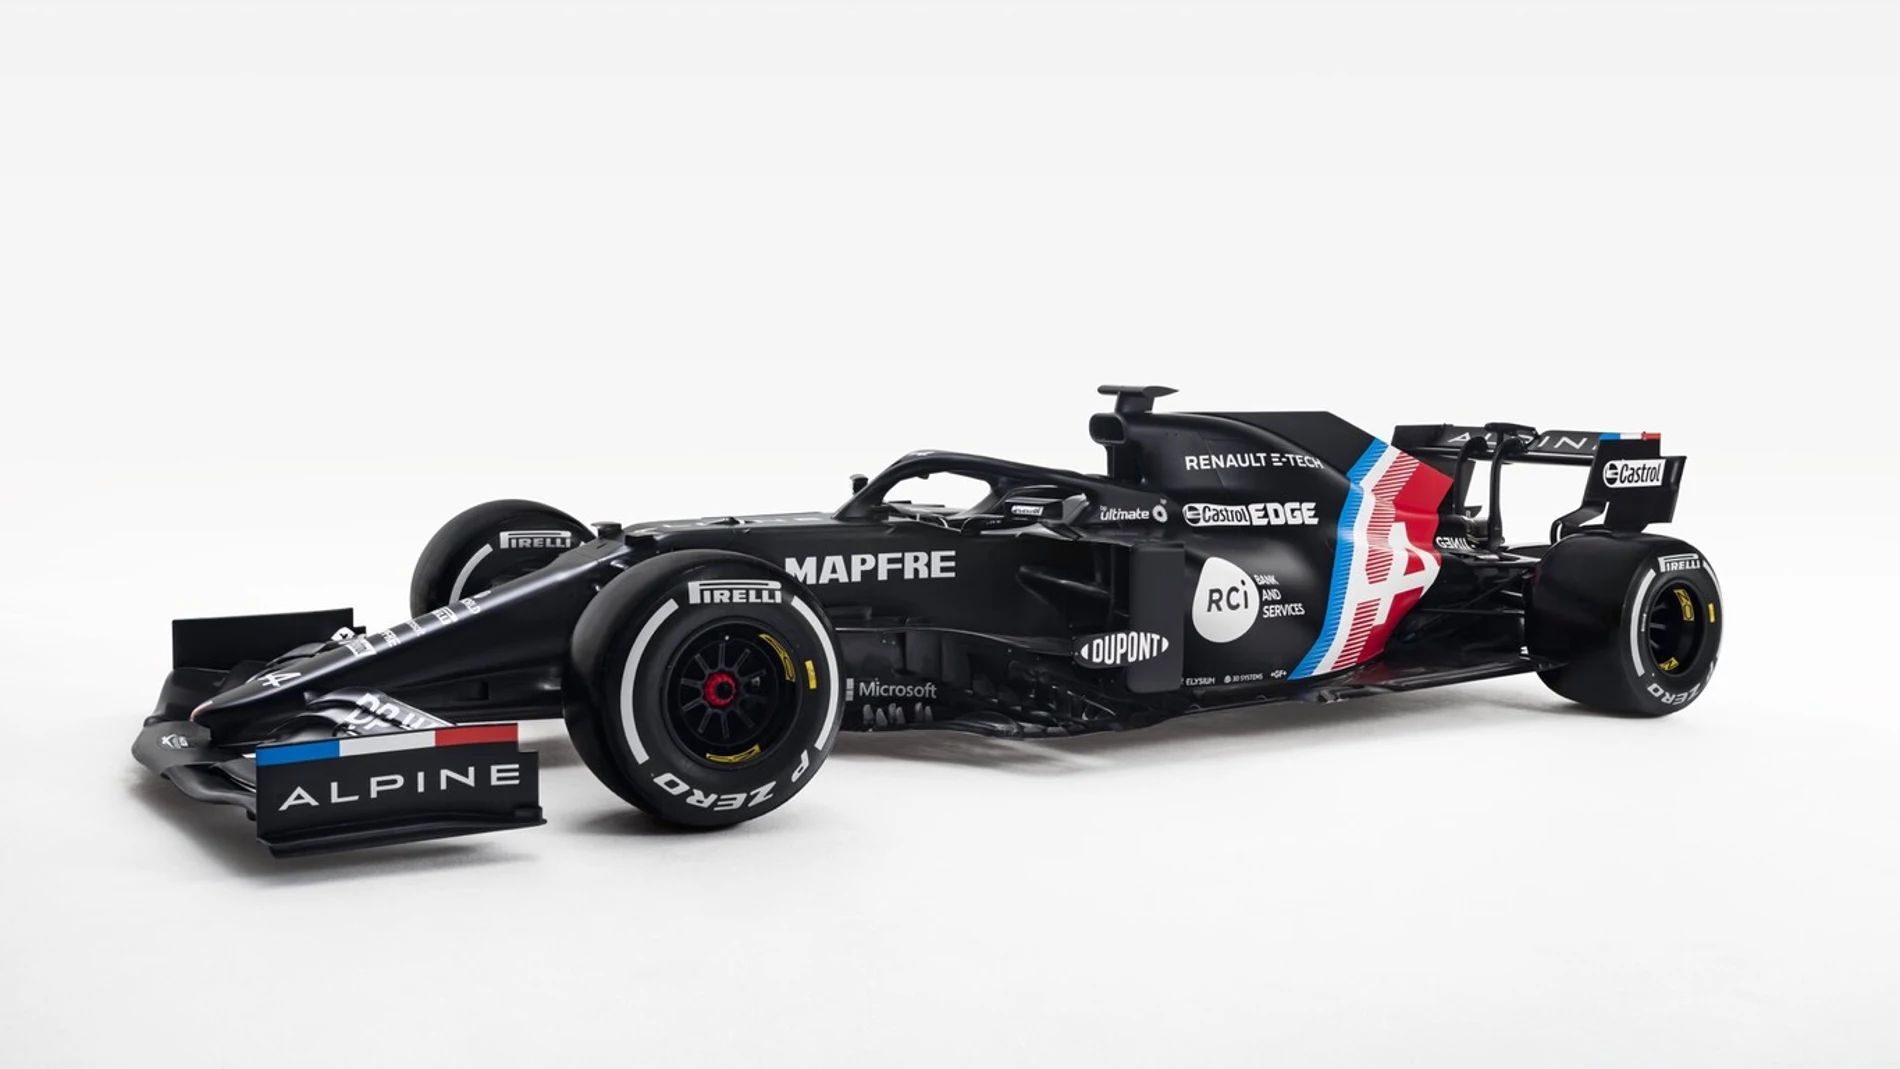 Imagen del nuevo coche de Fernando Alonso, Alpine A521 Renault